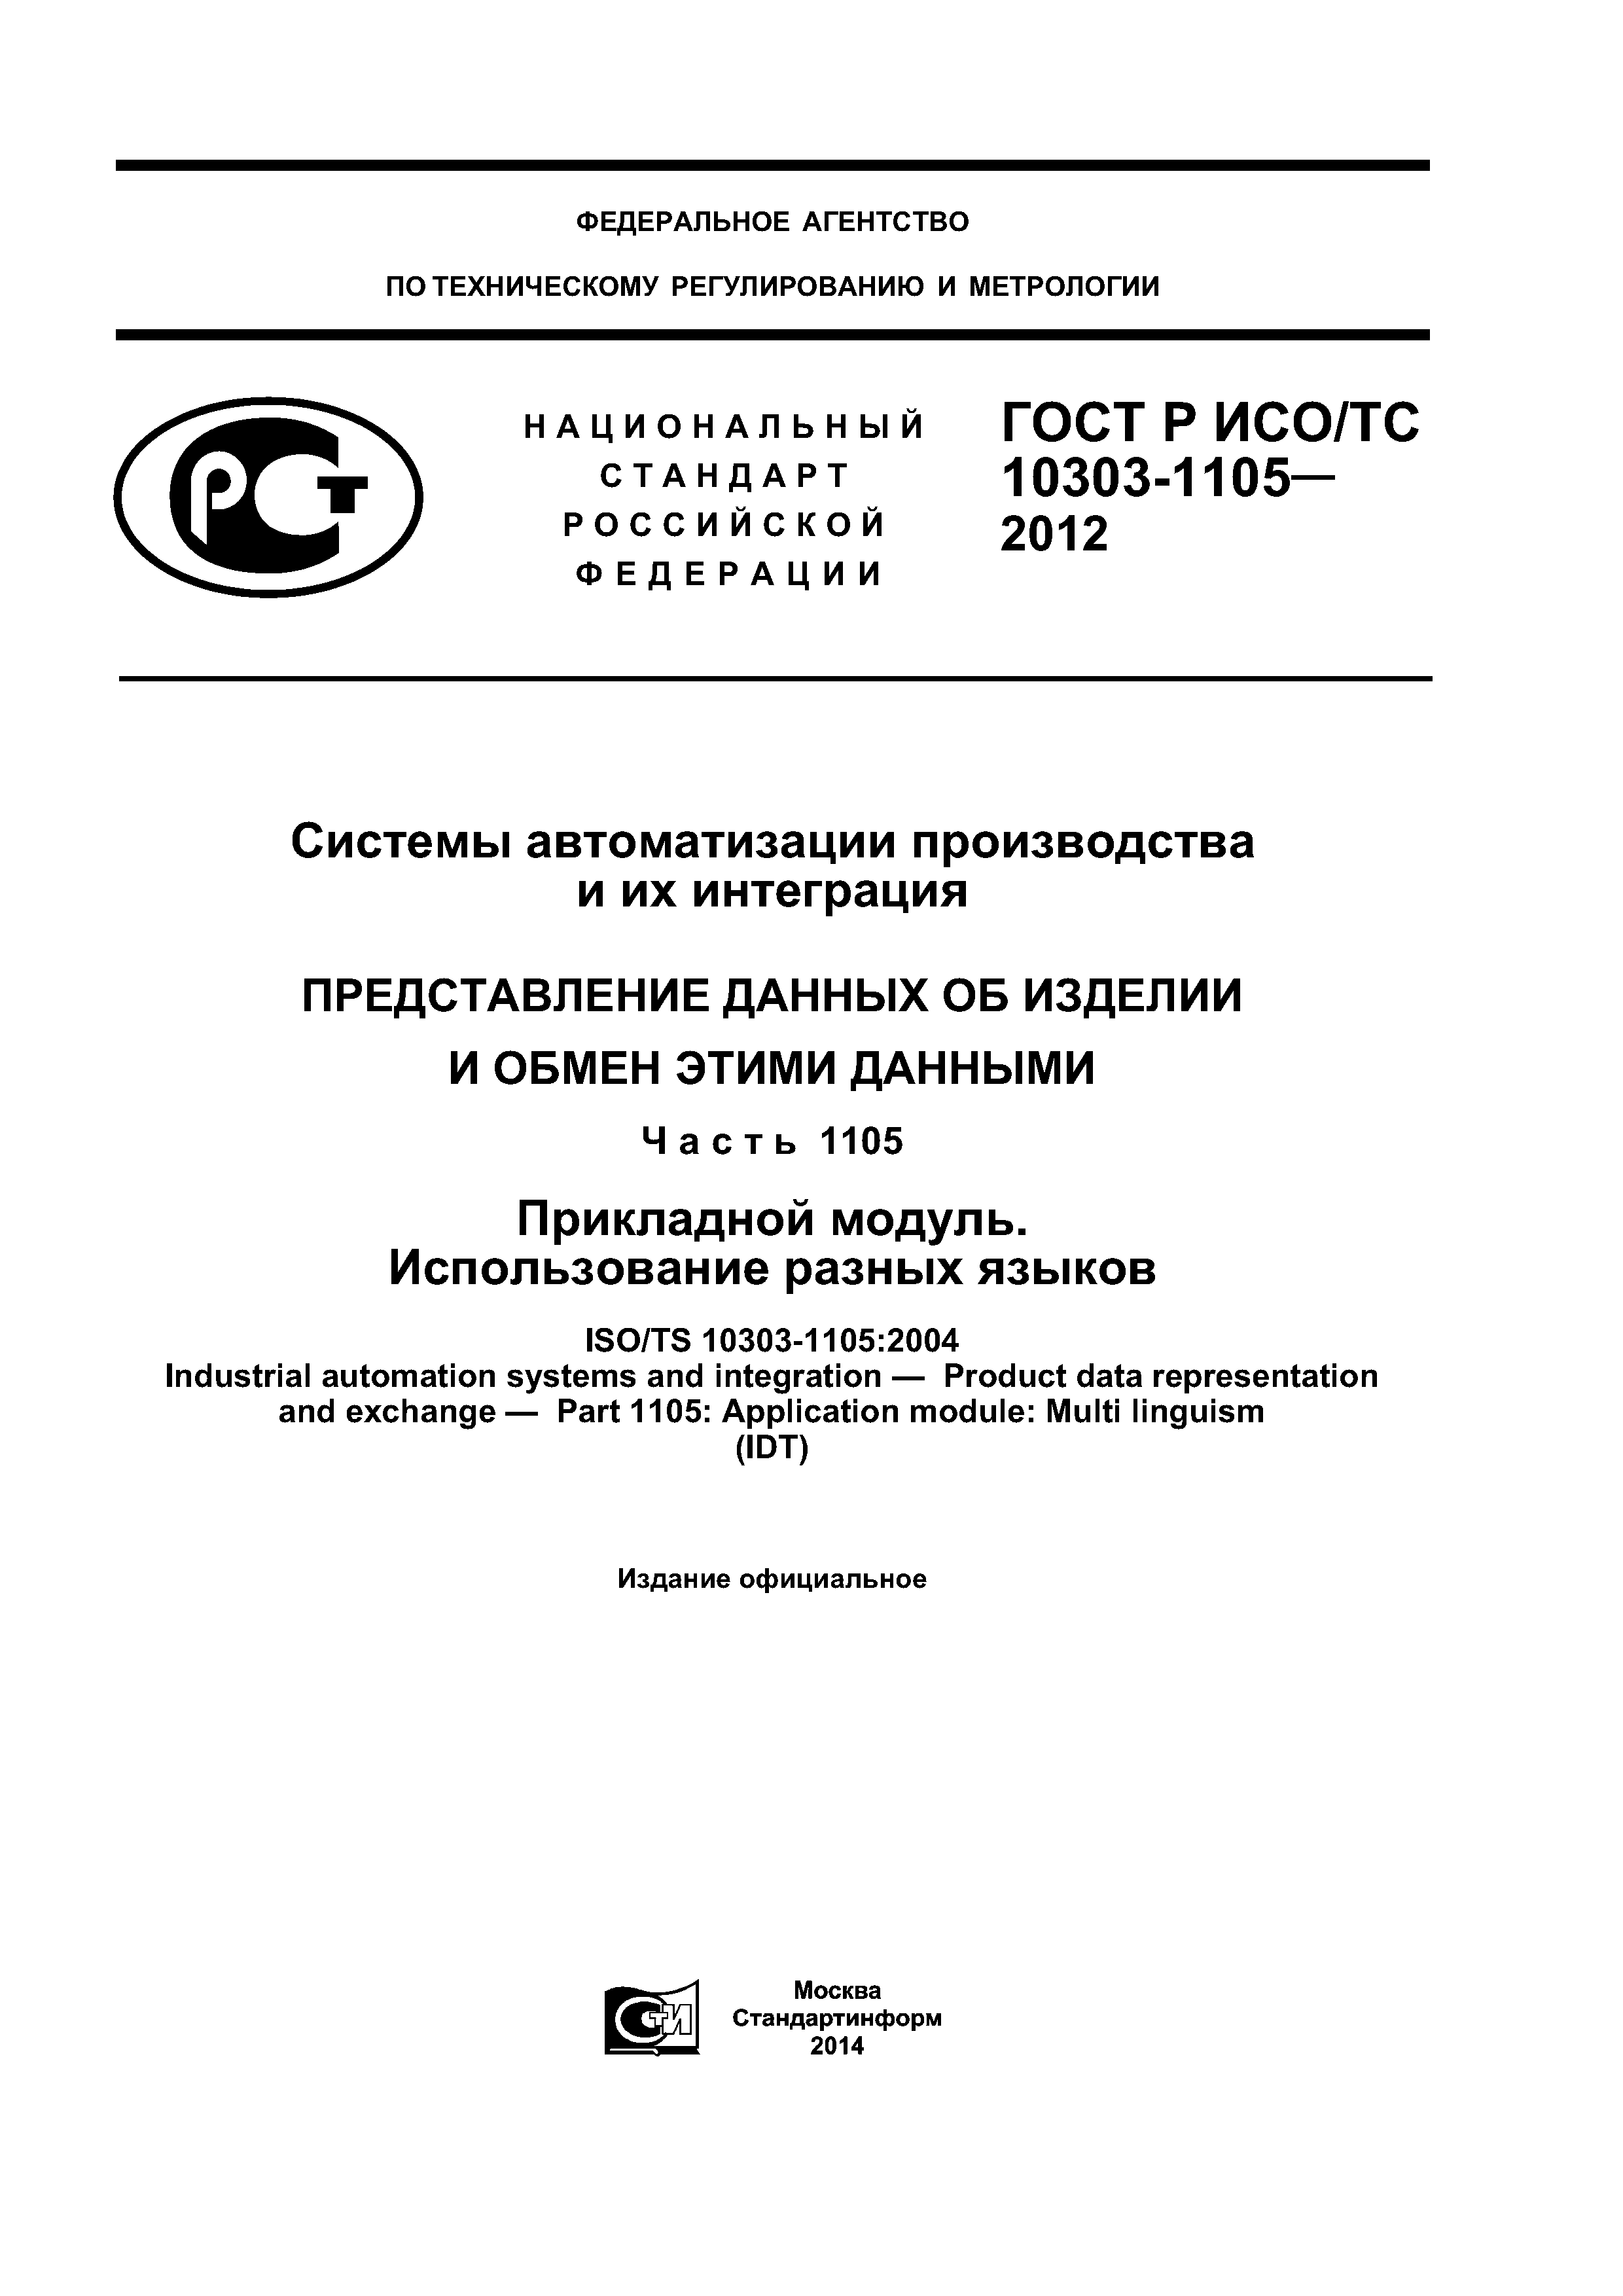 ГОСТ Р ИСО/ТС 10303-1105-2012